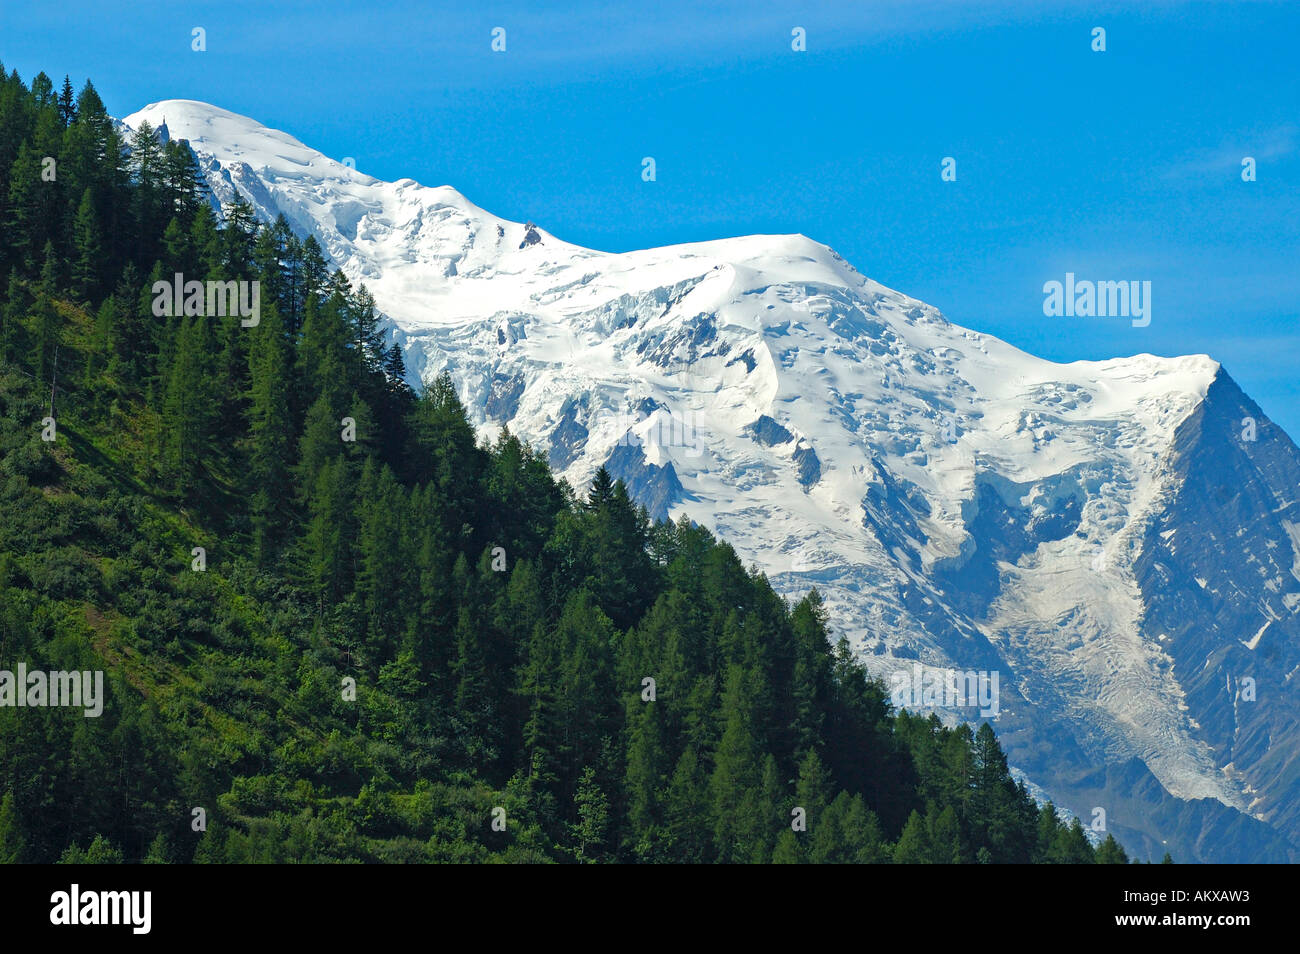 Massiccio del Monte Bianco, f.l.t.r. Mont Blanc, Dome du Gouter, Aiguille du Gouter, Alpi savoie, Haute Savoie, Francia Foto Stock